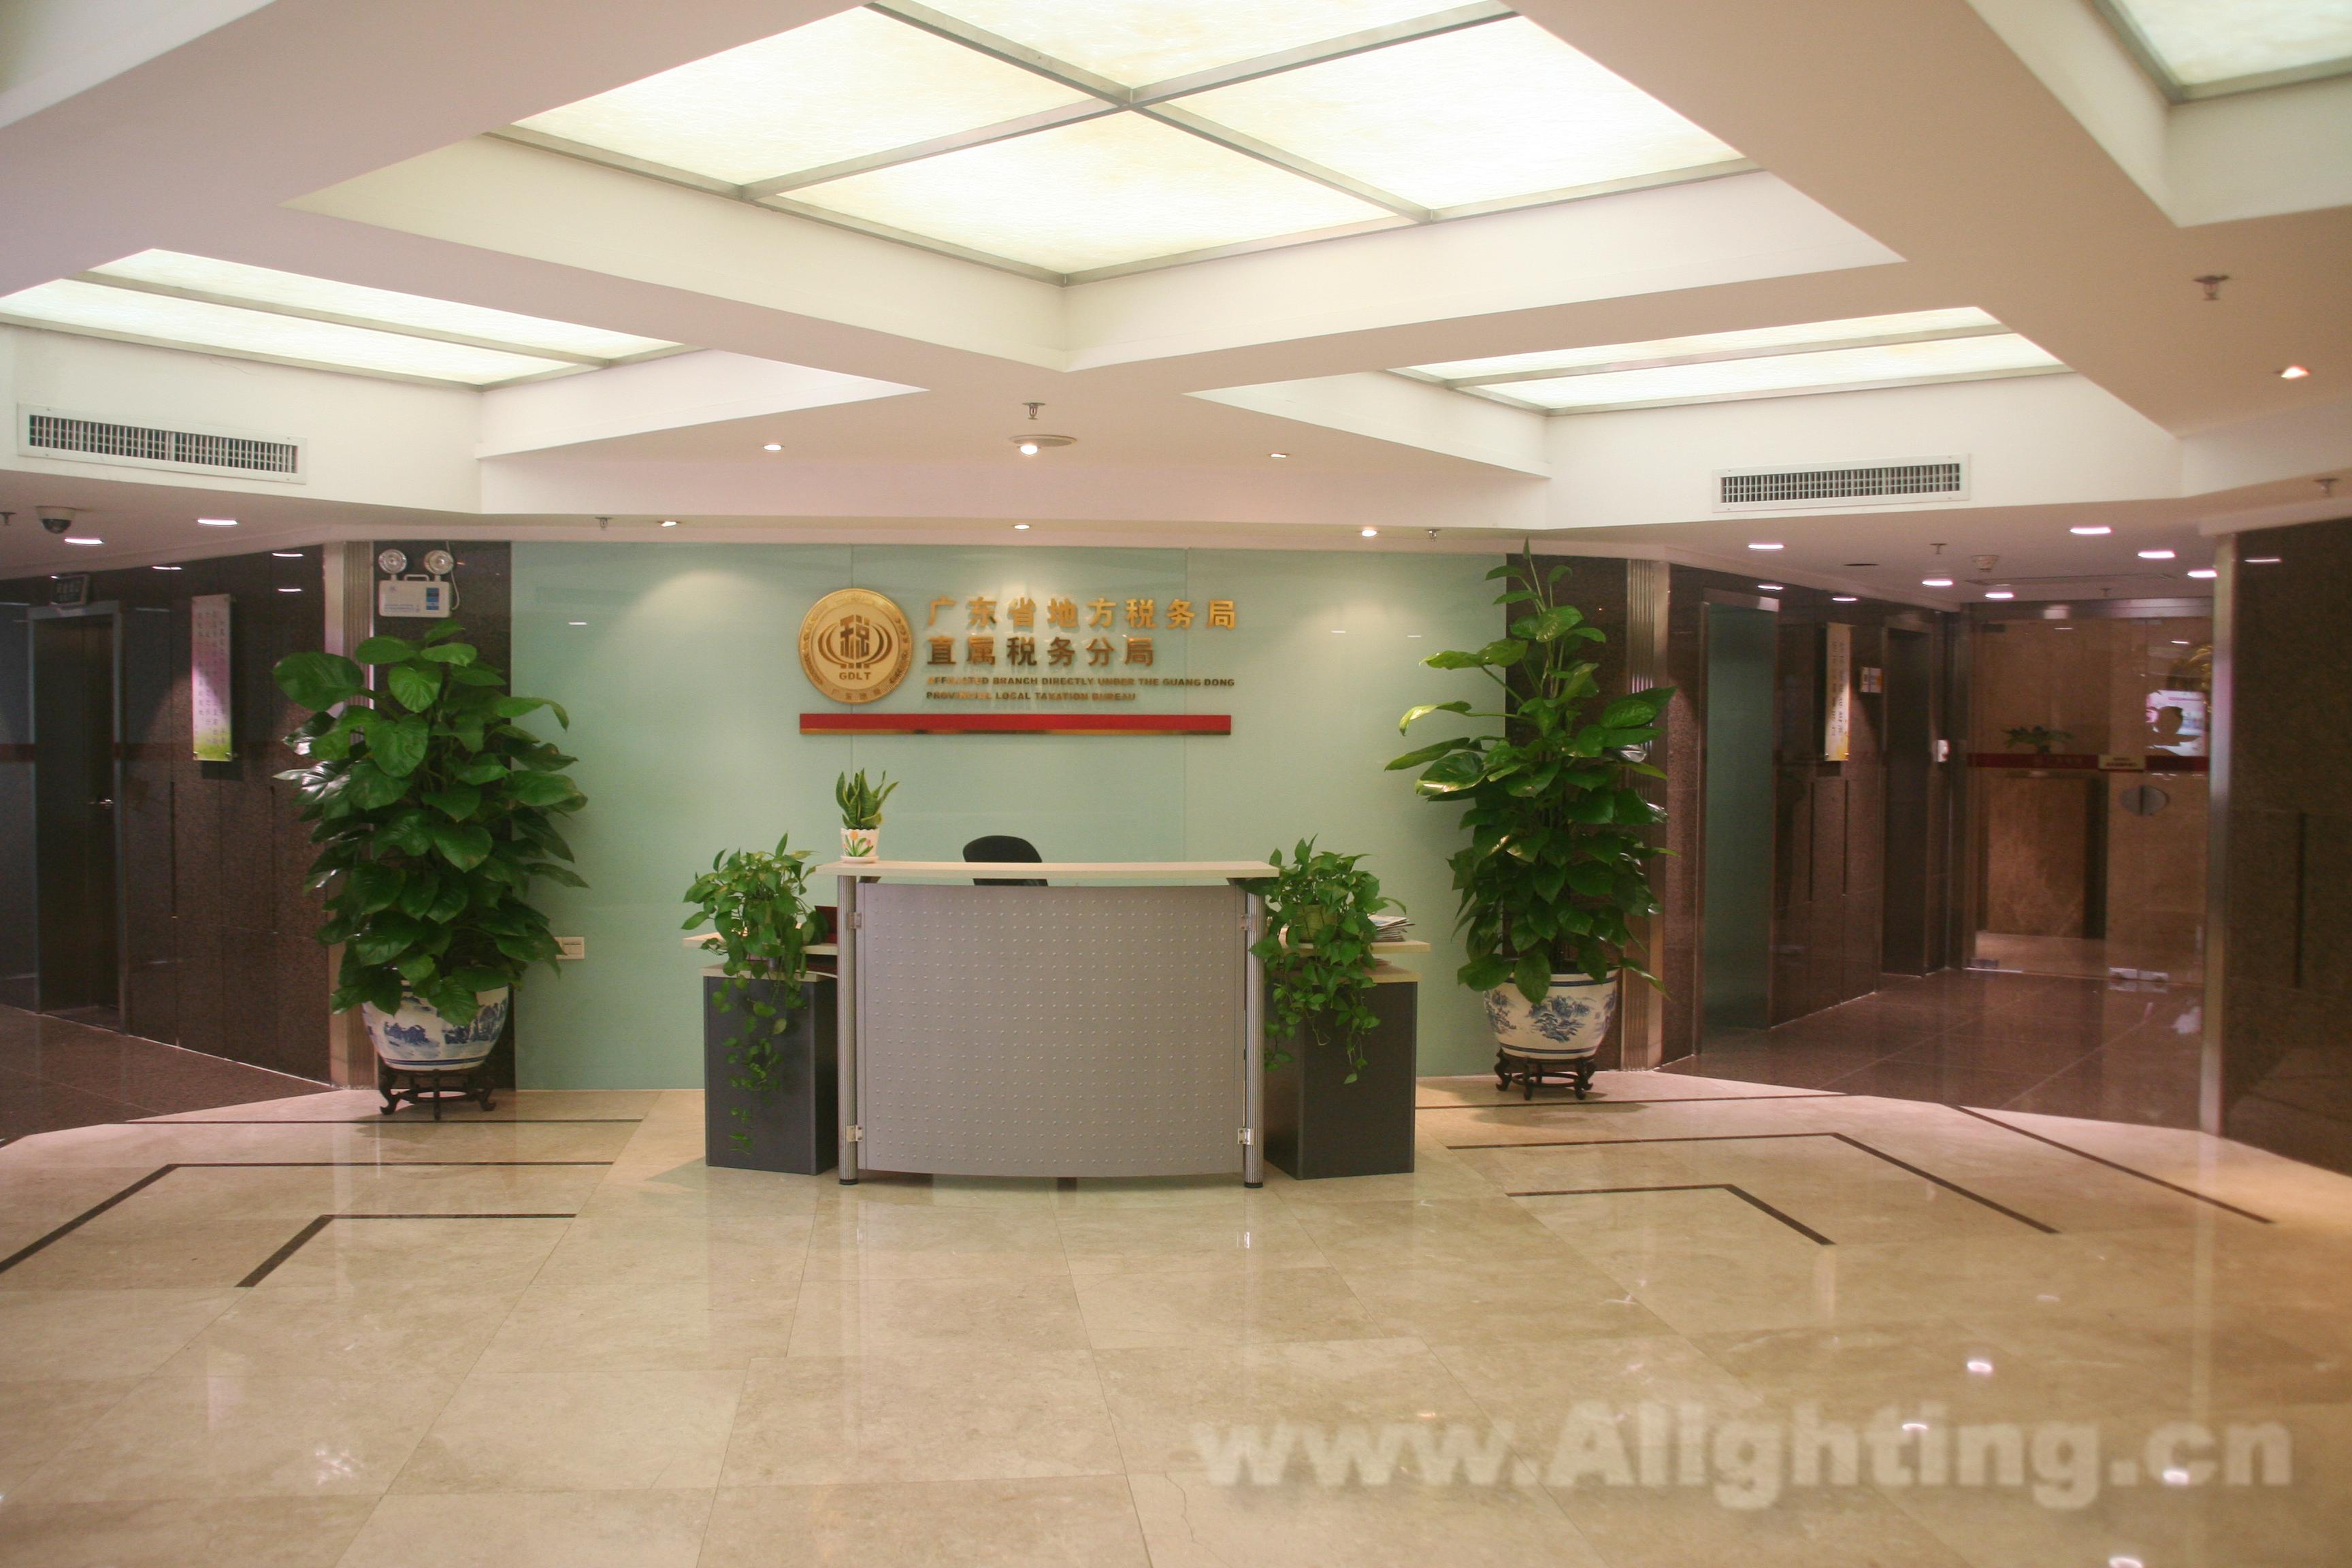 广东省税务局办公大楼改造运用光为照明LED灯